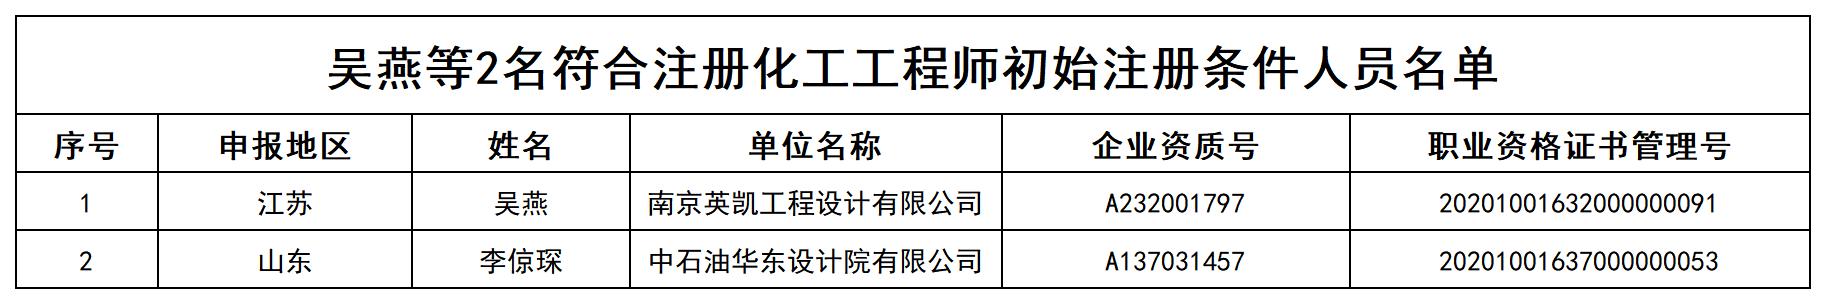 吴燕等2名符合注册化工工程师初始注册条件人员名单_打印结果.jpg